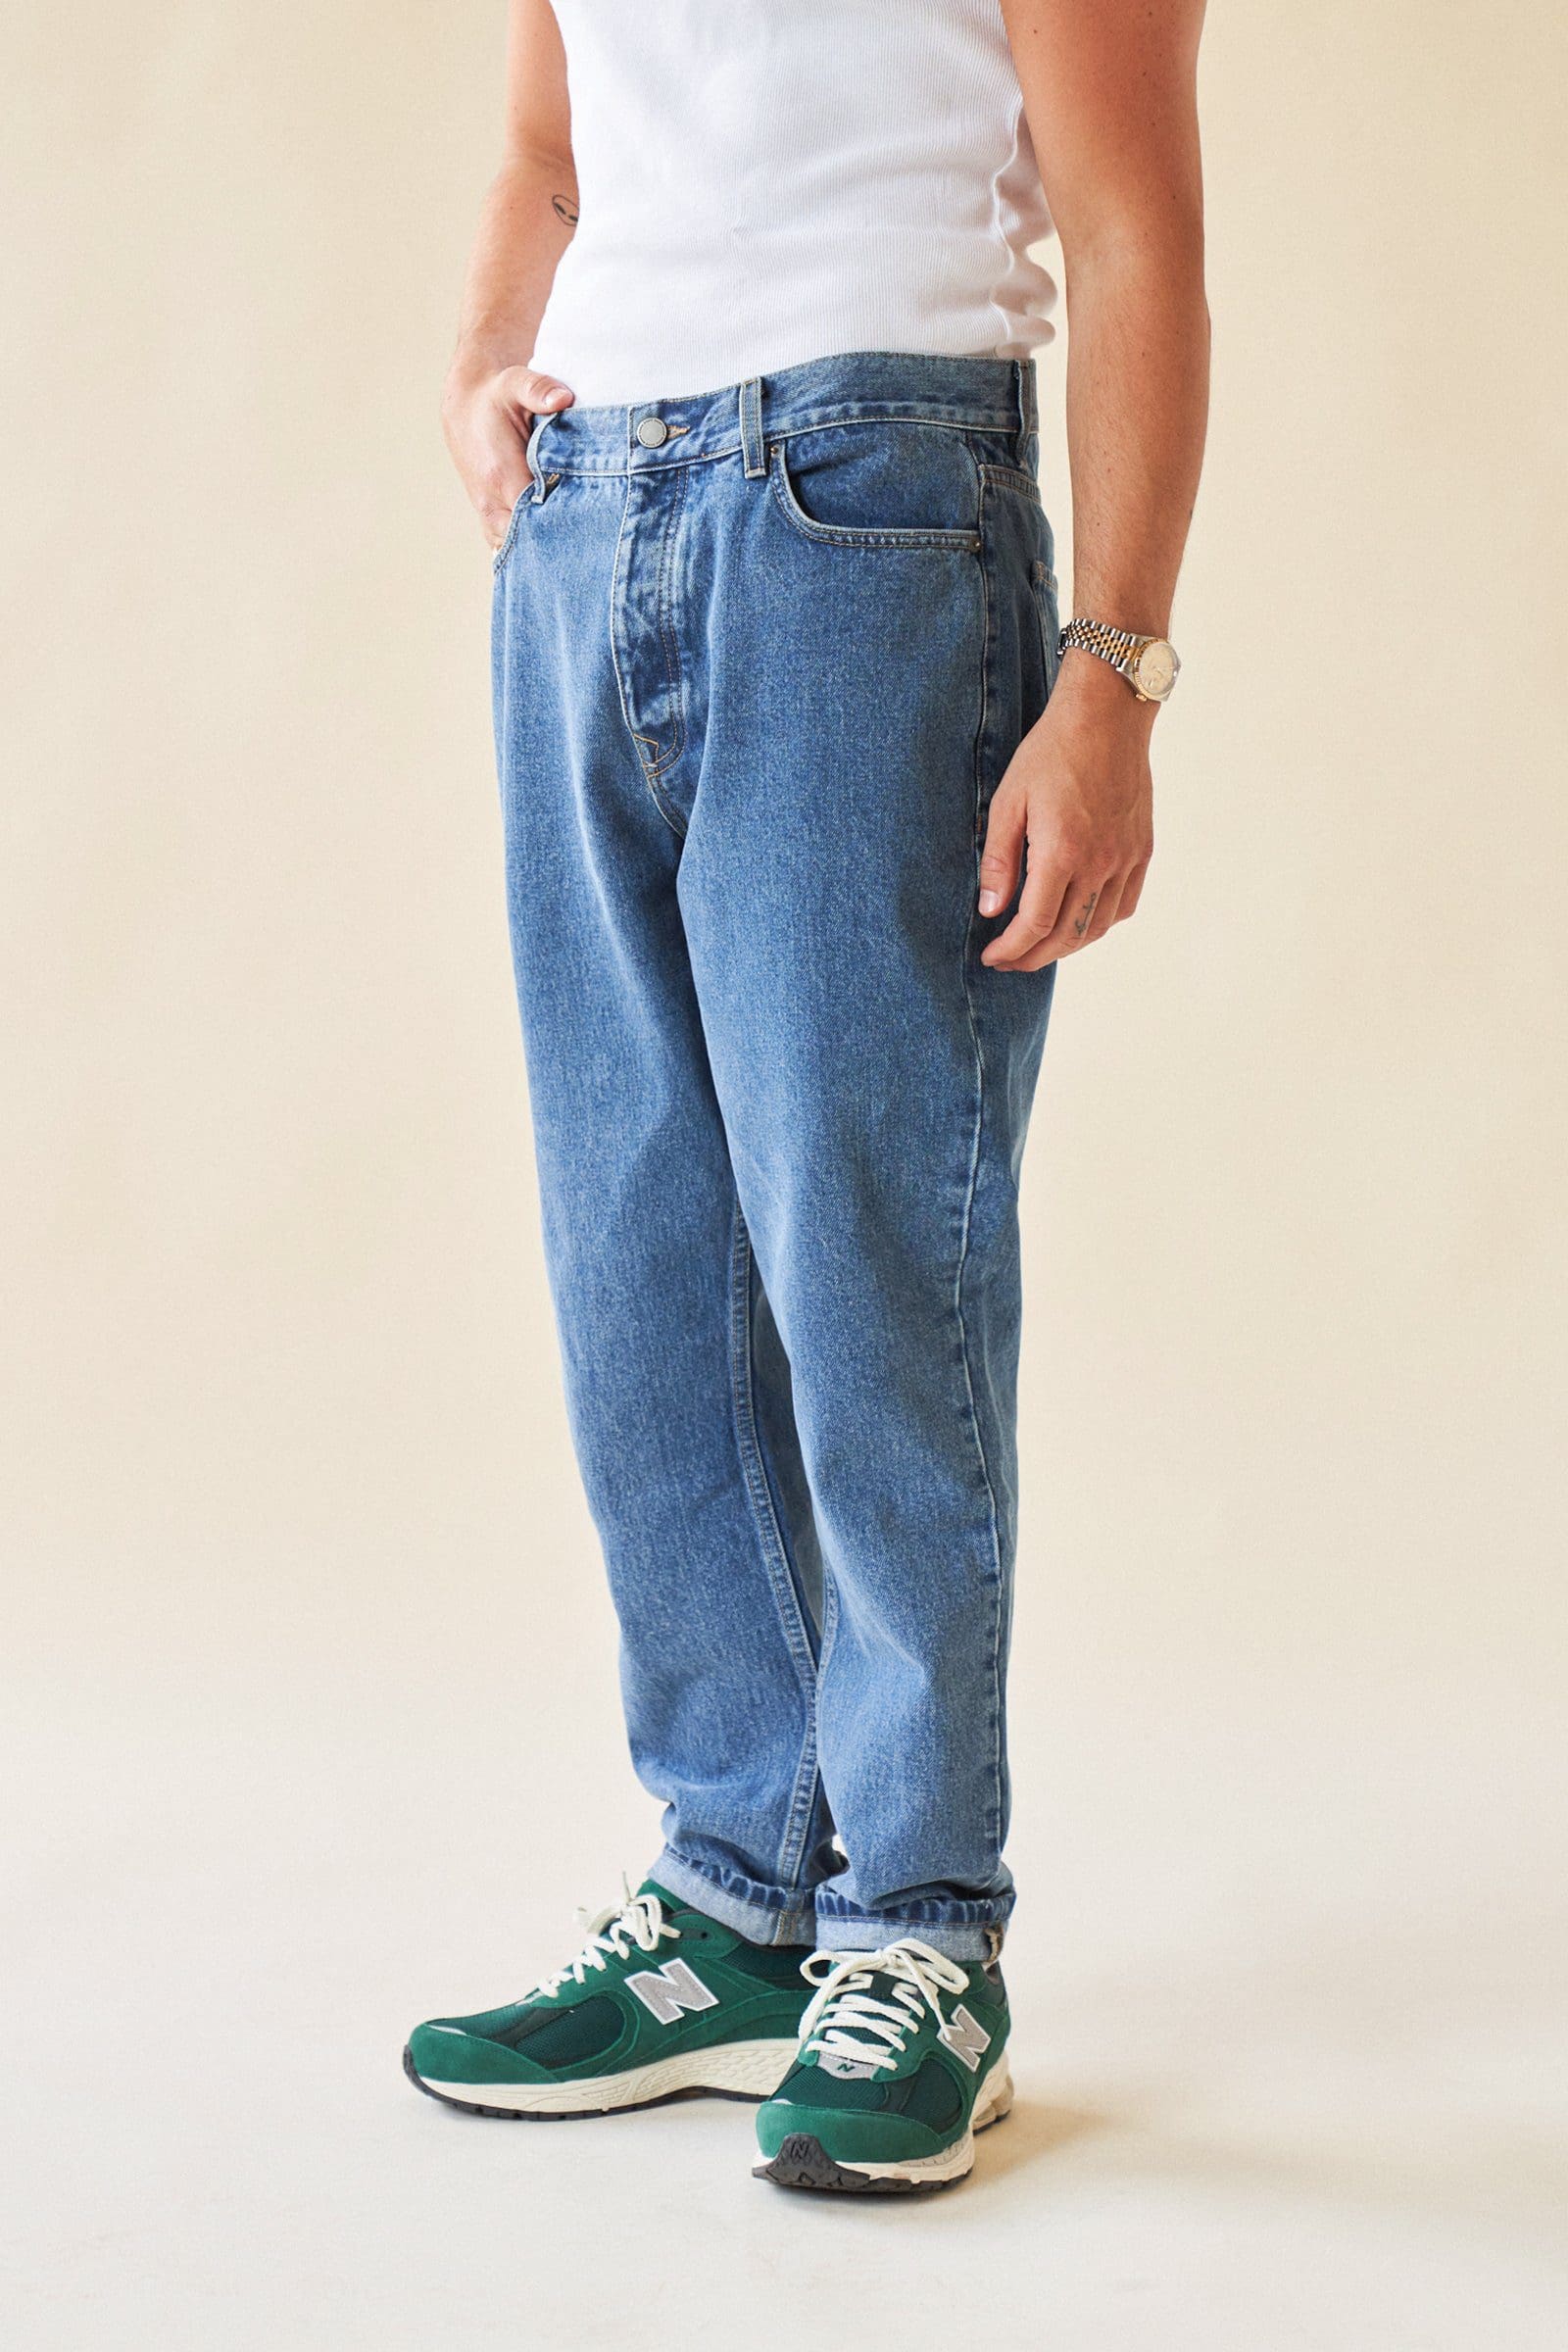 tapered jeans, Het verschil tussen <strong>tapered fit jeans en slim fit jeans</strong>